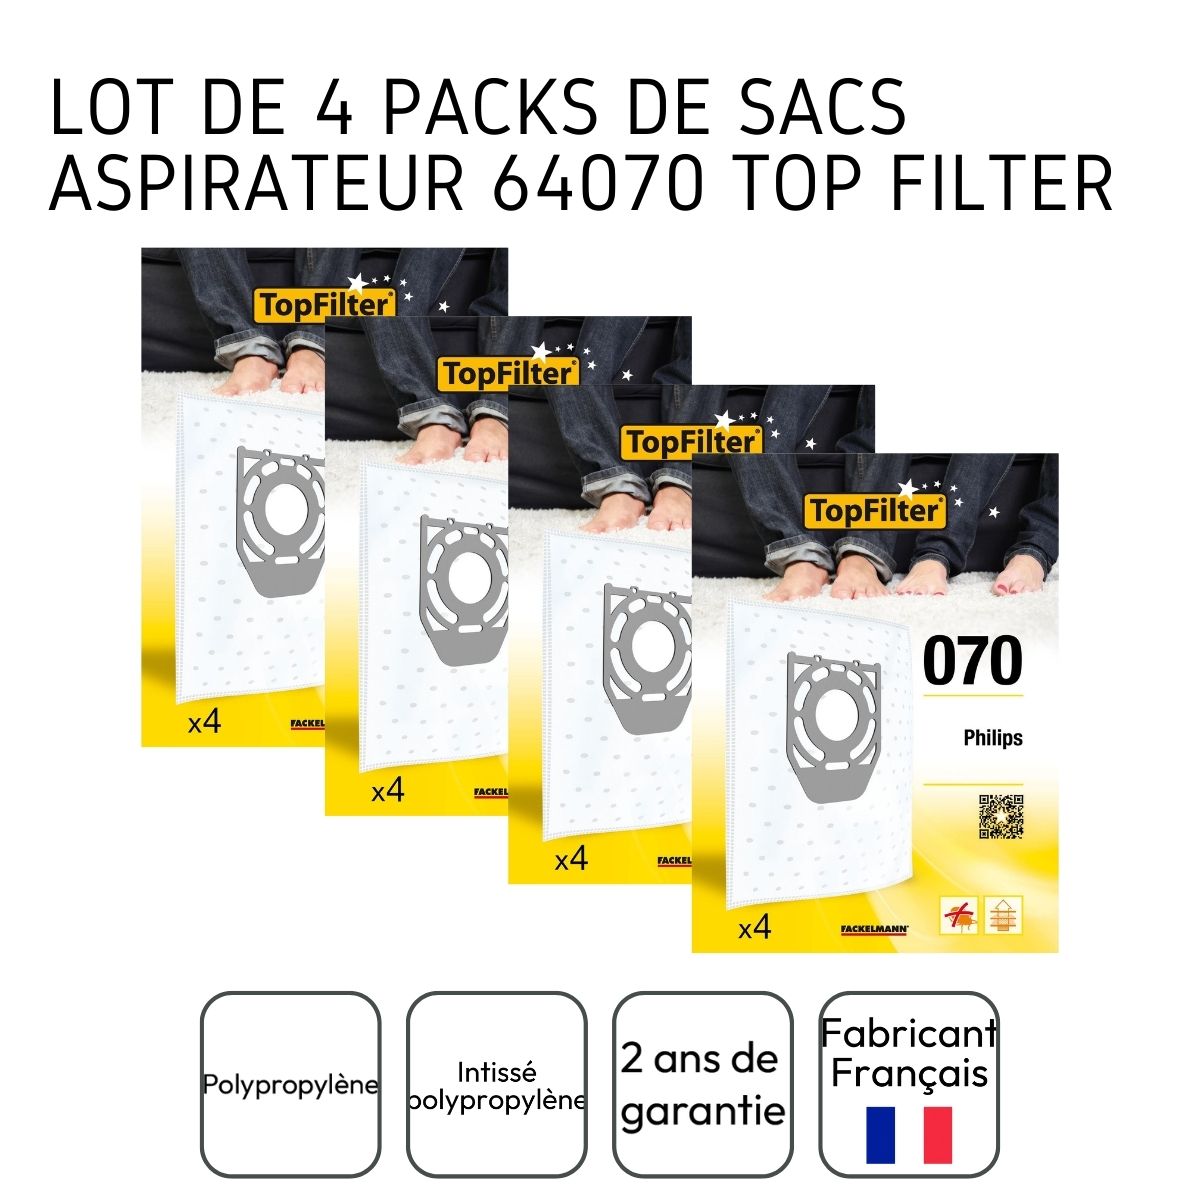 Lot de 4 packs de 4 sacs aspirateur 64070 Philips TopFilter Premium